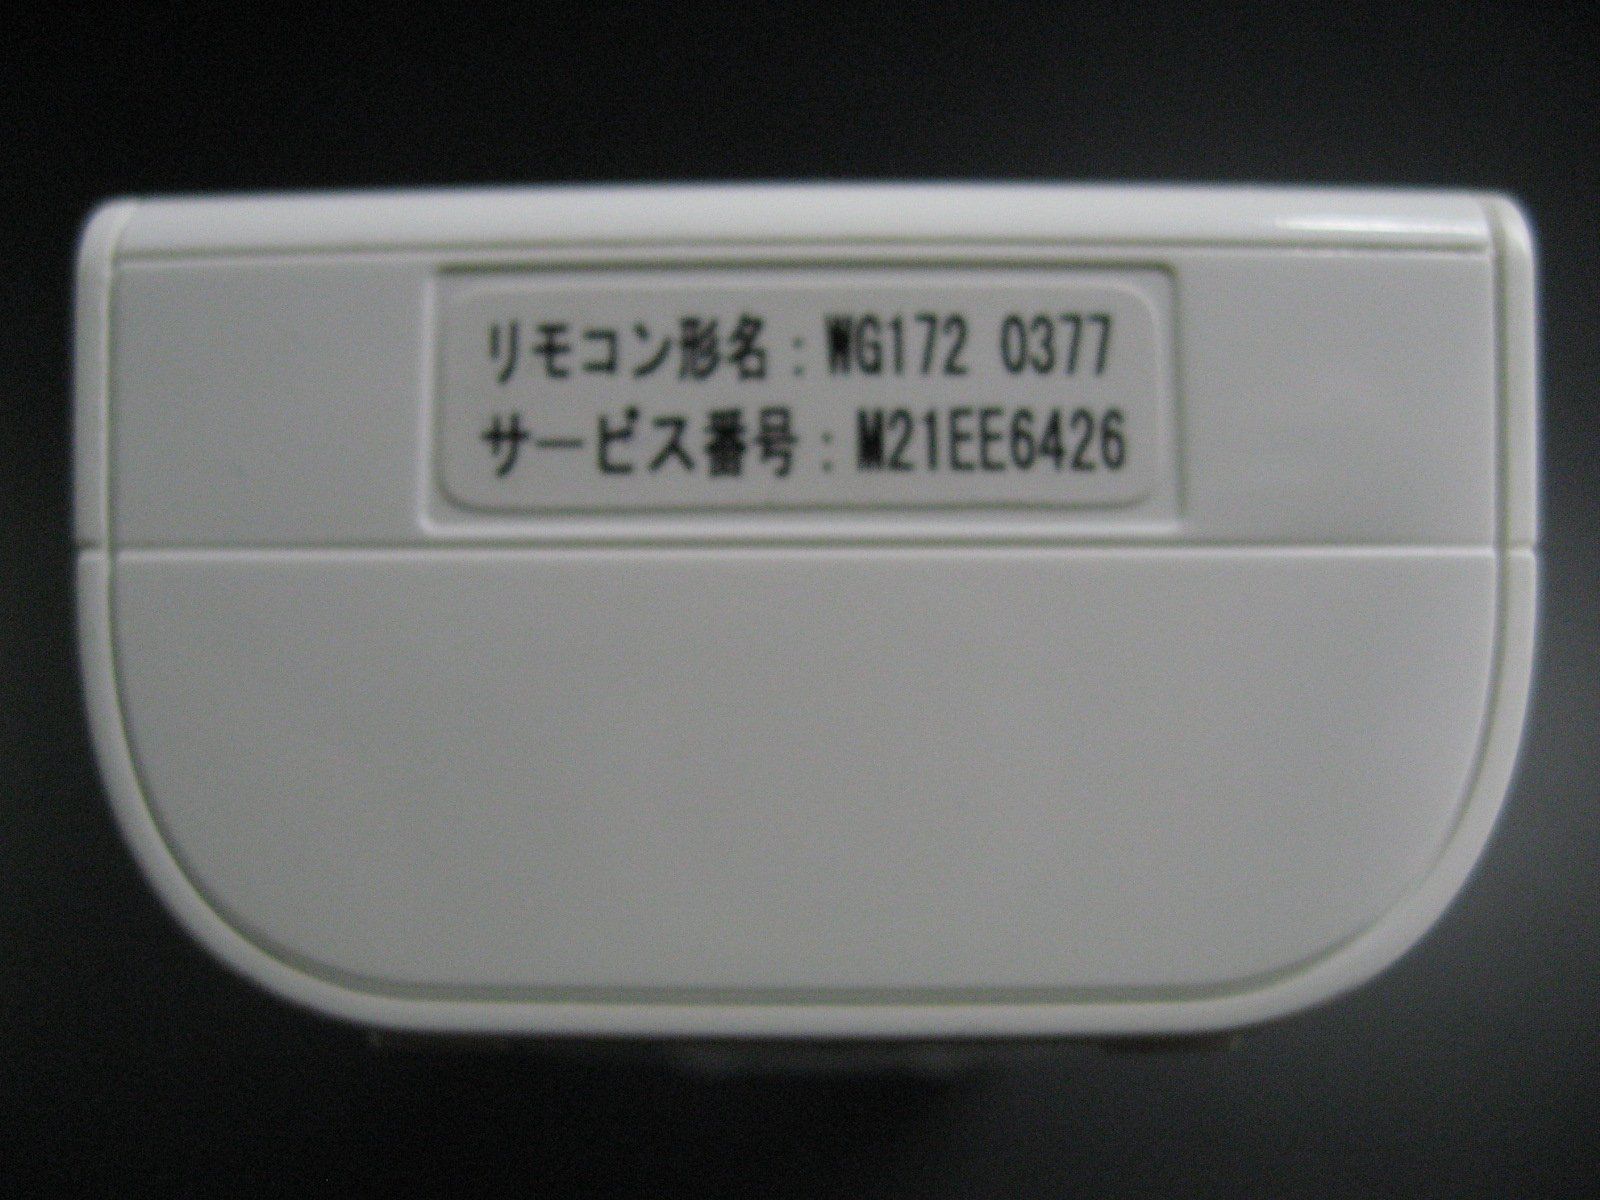 三菱電機(MITSUBISHI ELECTRIC) 三菱 ルームエアコン 霧ヶ峰用 リモコン WG172(M21 EE6 426) - メルカリ